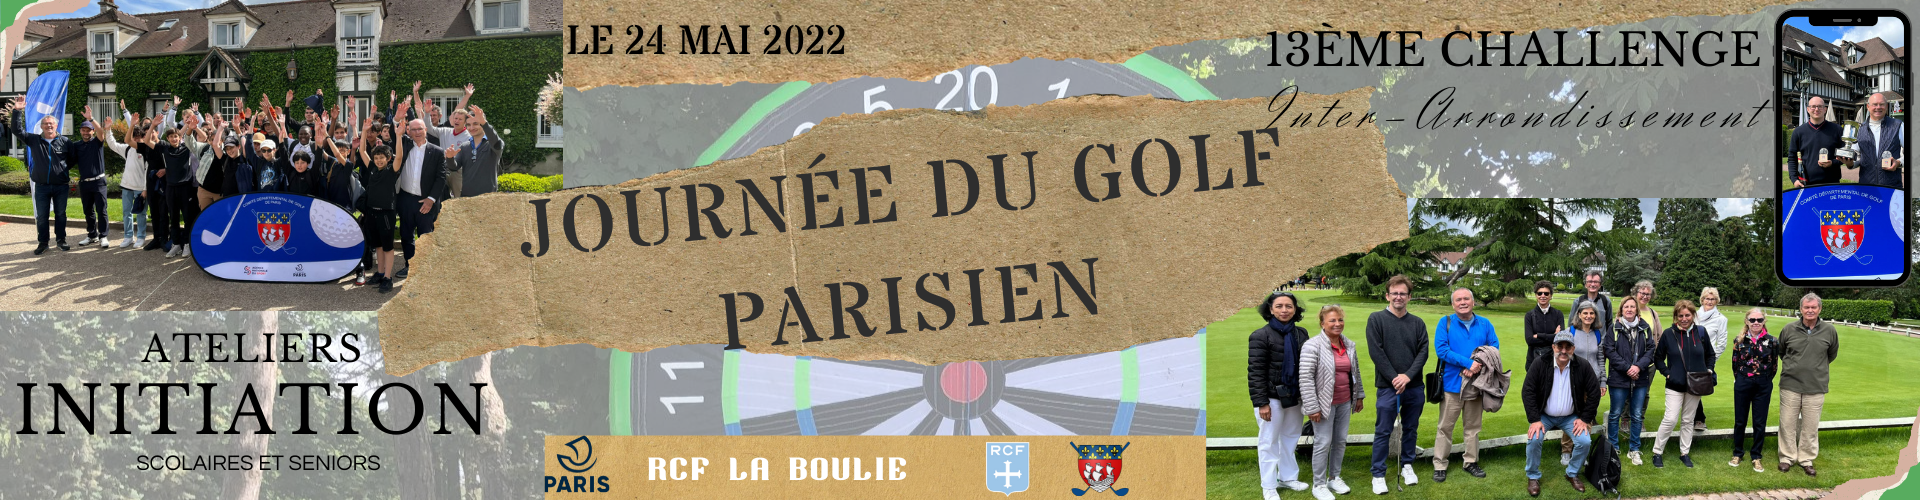 Journée du Golf Parisien 2022